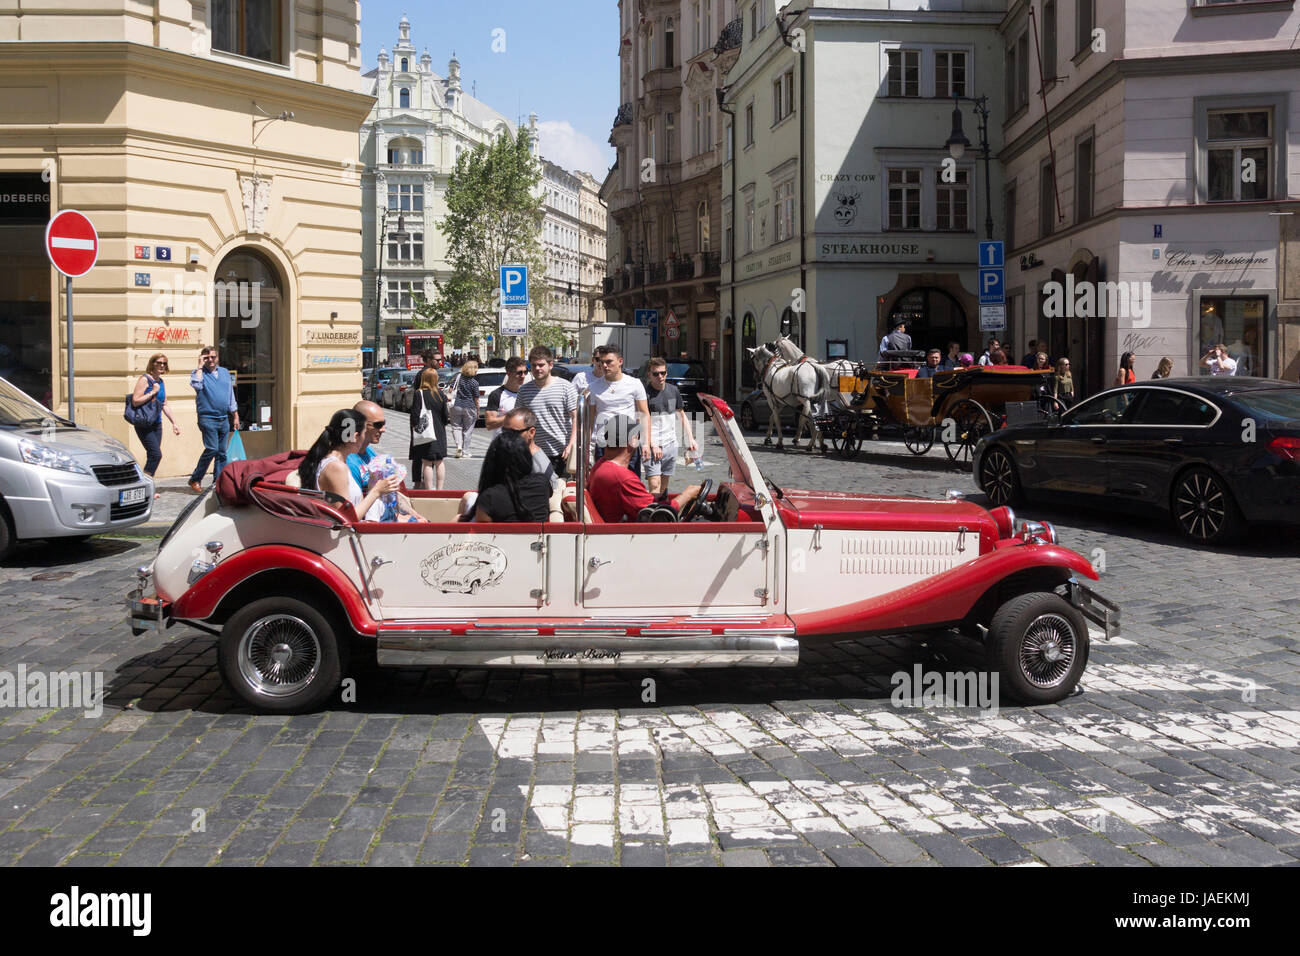 Les touristes à visiter dans une limousine vintage Alfa Romeo Spider dans une visite de la vieille ville de Prague Banque D'Images